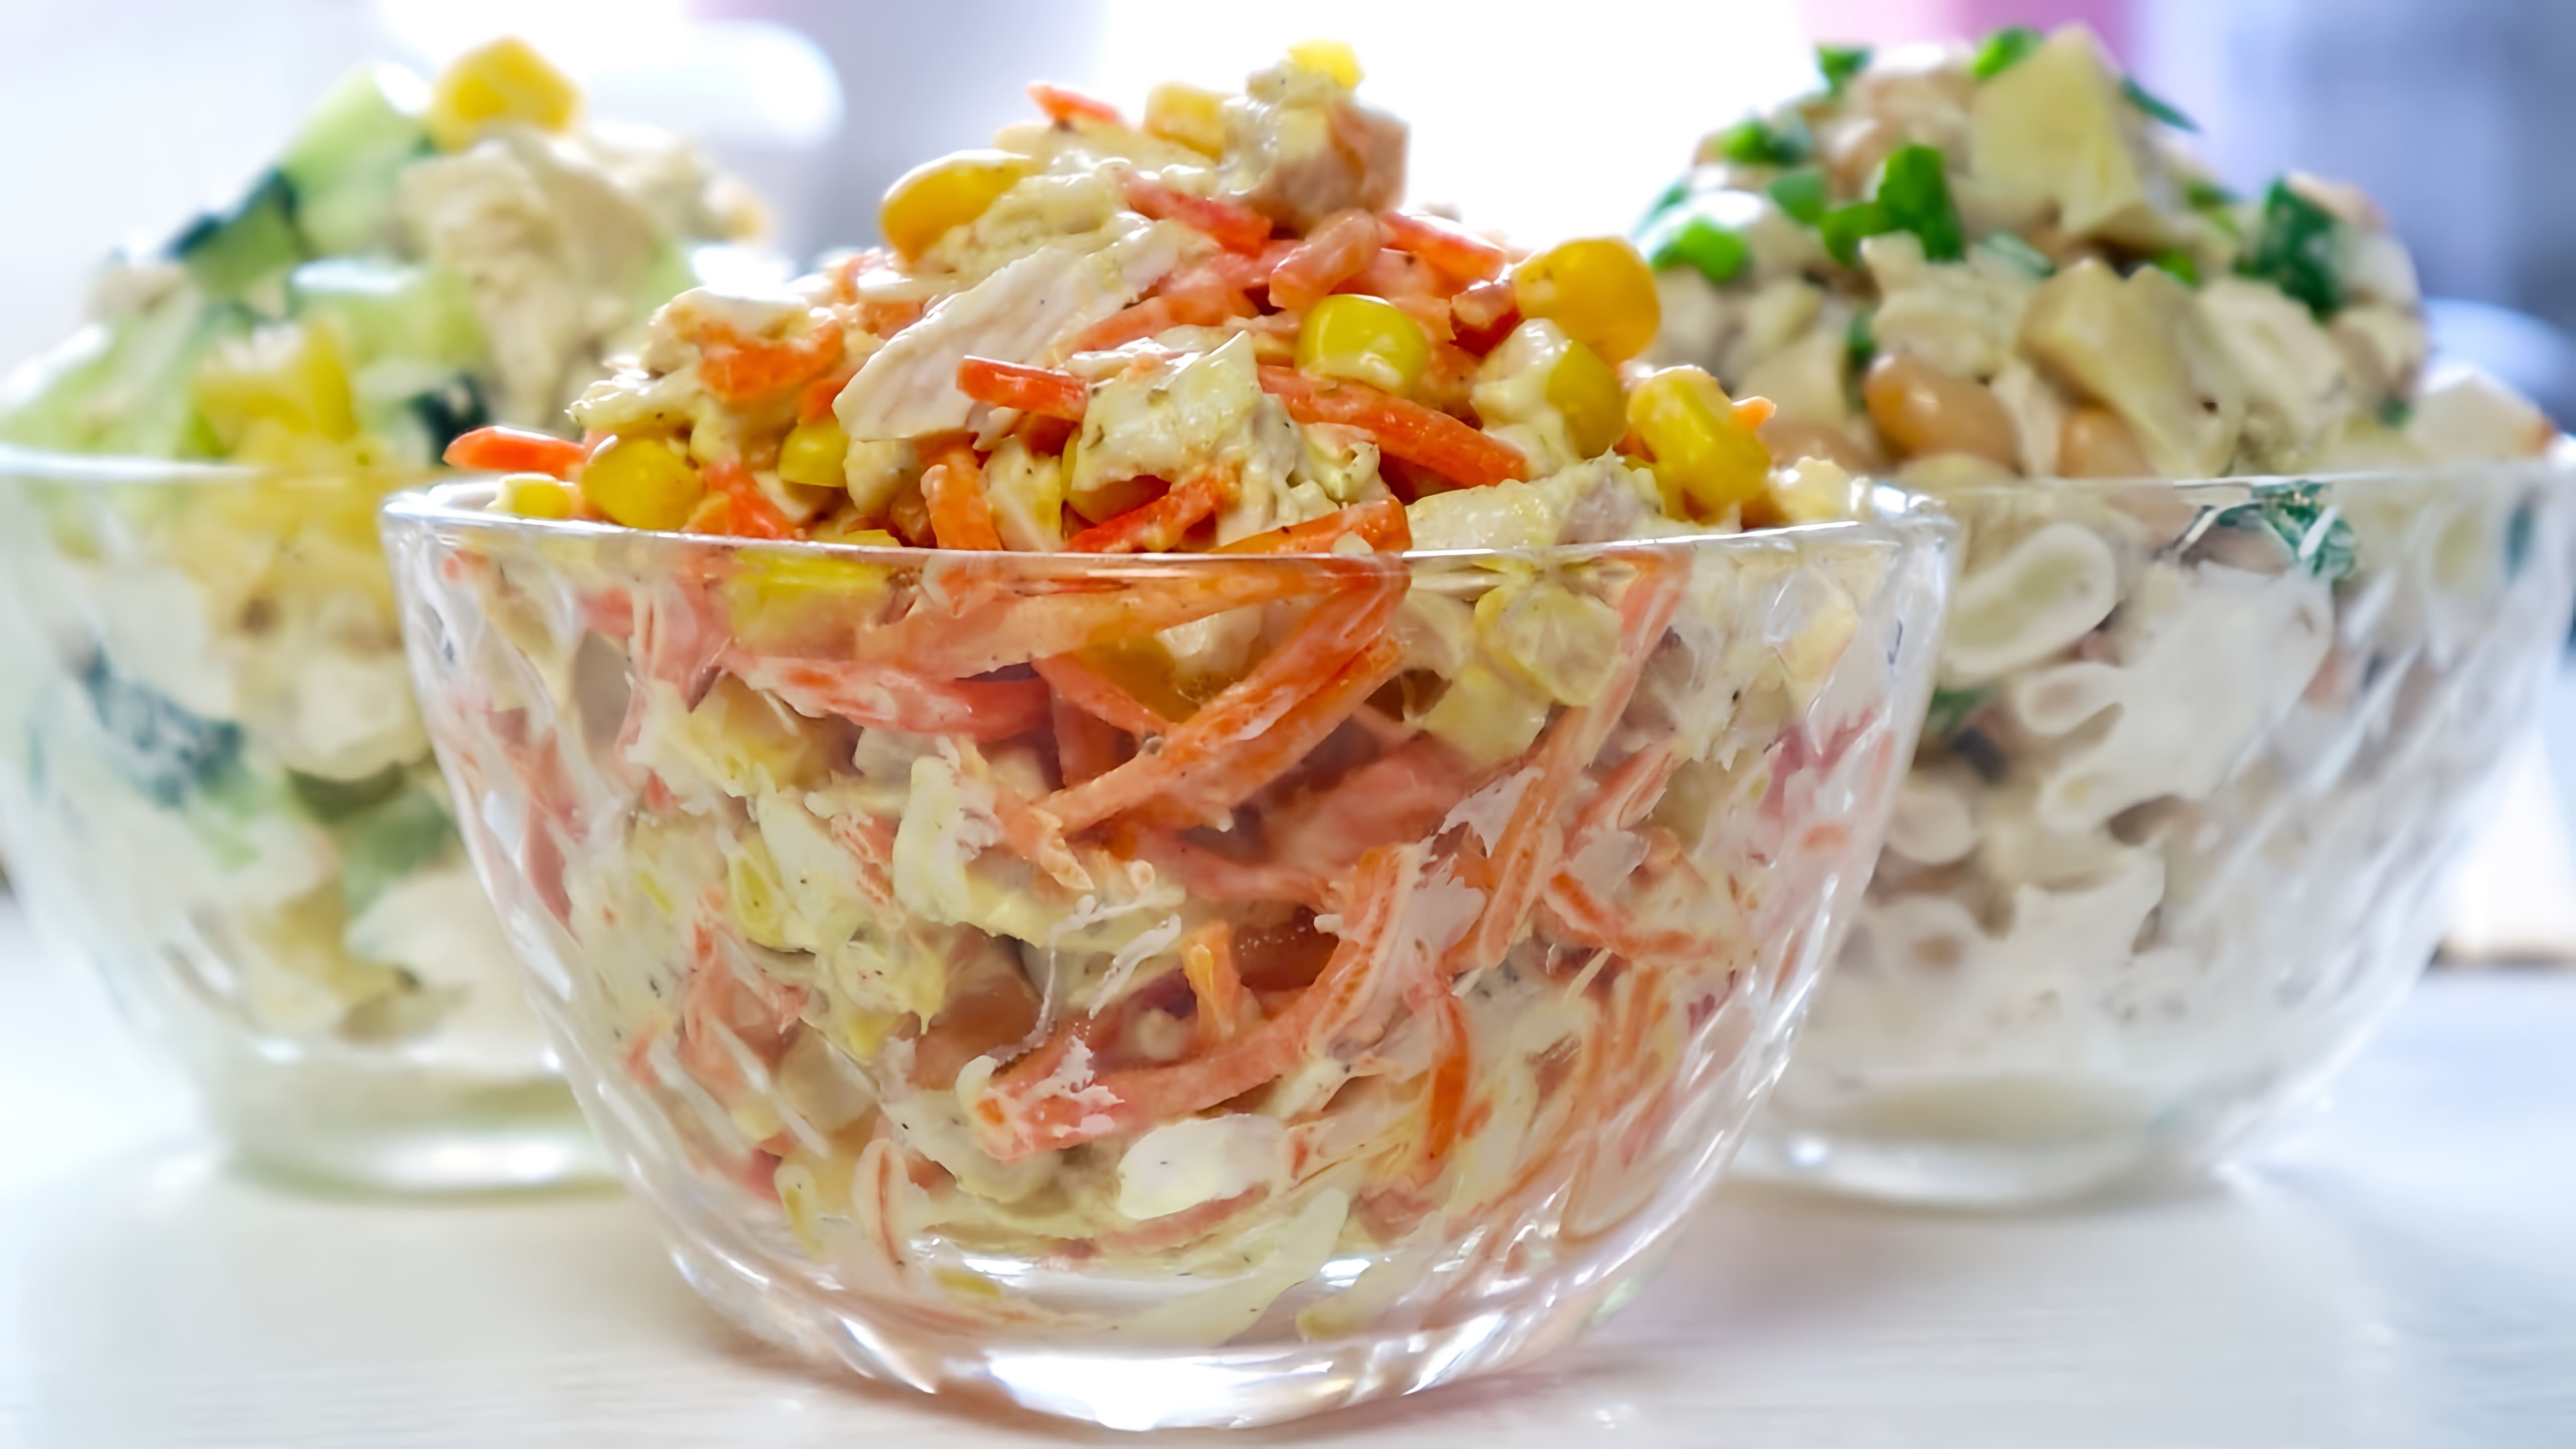 В этом видео демонстрируется приготовление трех простых салатов из трех основных ингредиентов